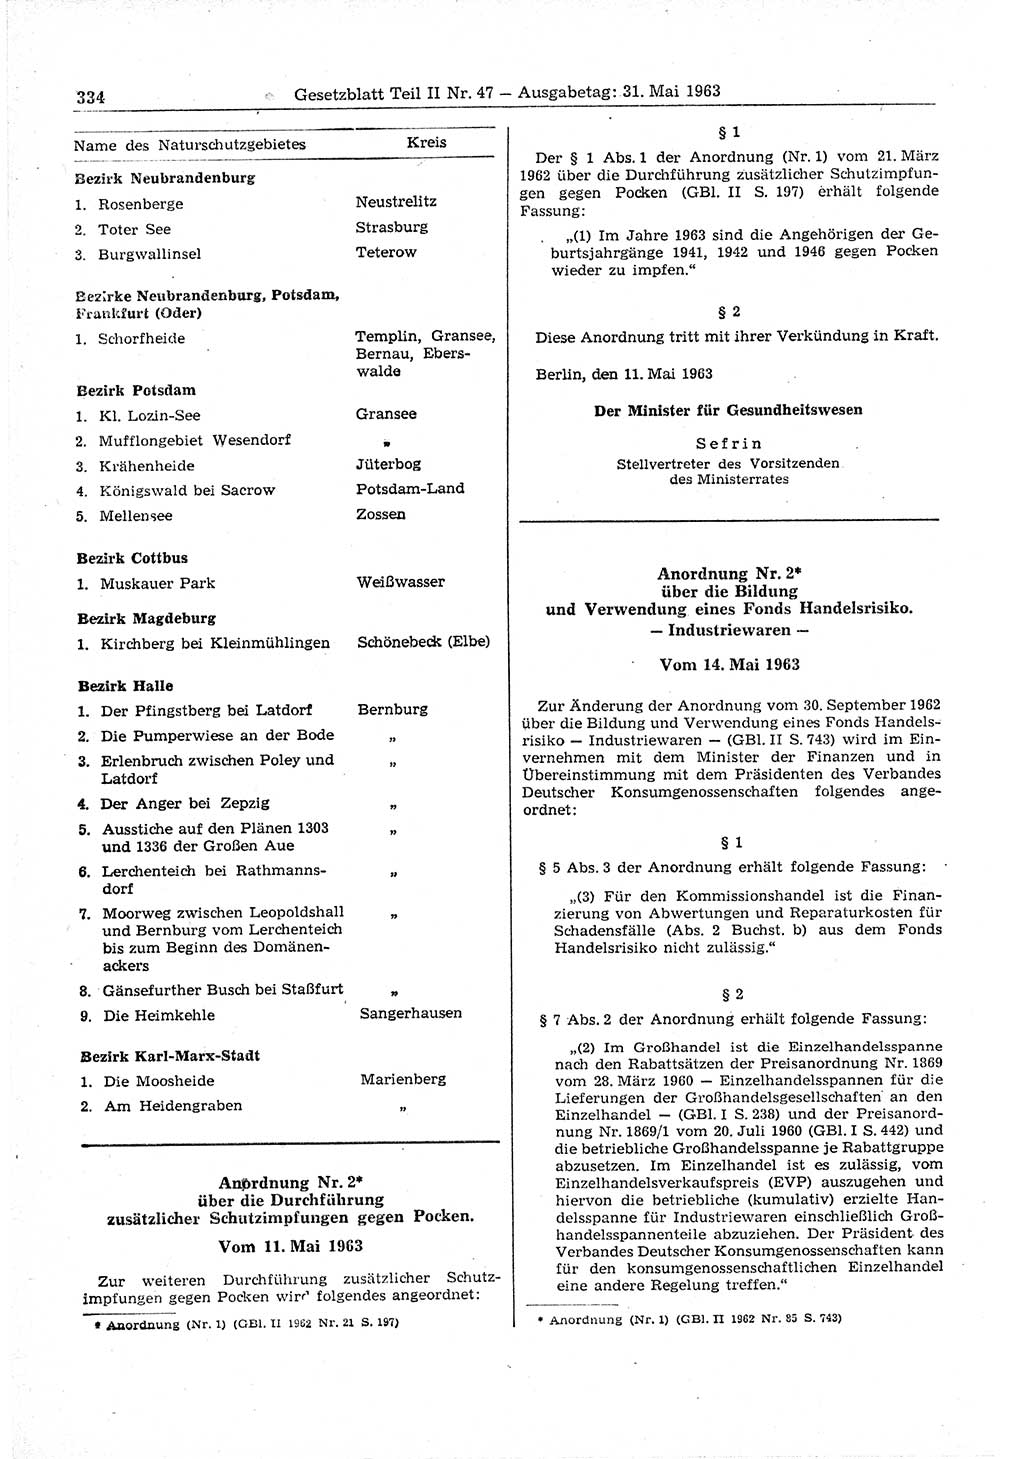 Gesetzblatt (GBl.) der Deutschen Demokratischen Republik (DDR) Teil ⅠⅠ 1963, Seite 334 (GBl. DDR ⅠⅠ 1963, S. 334)